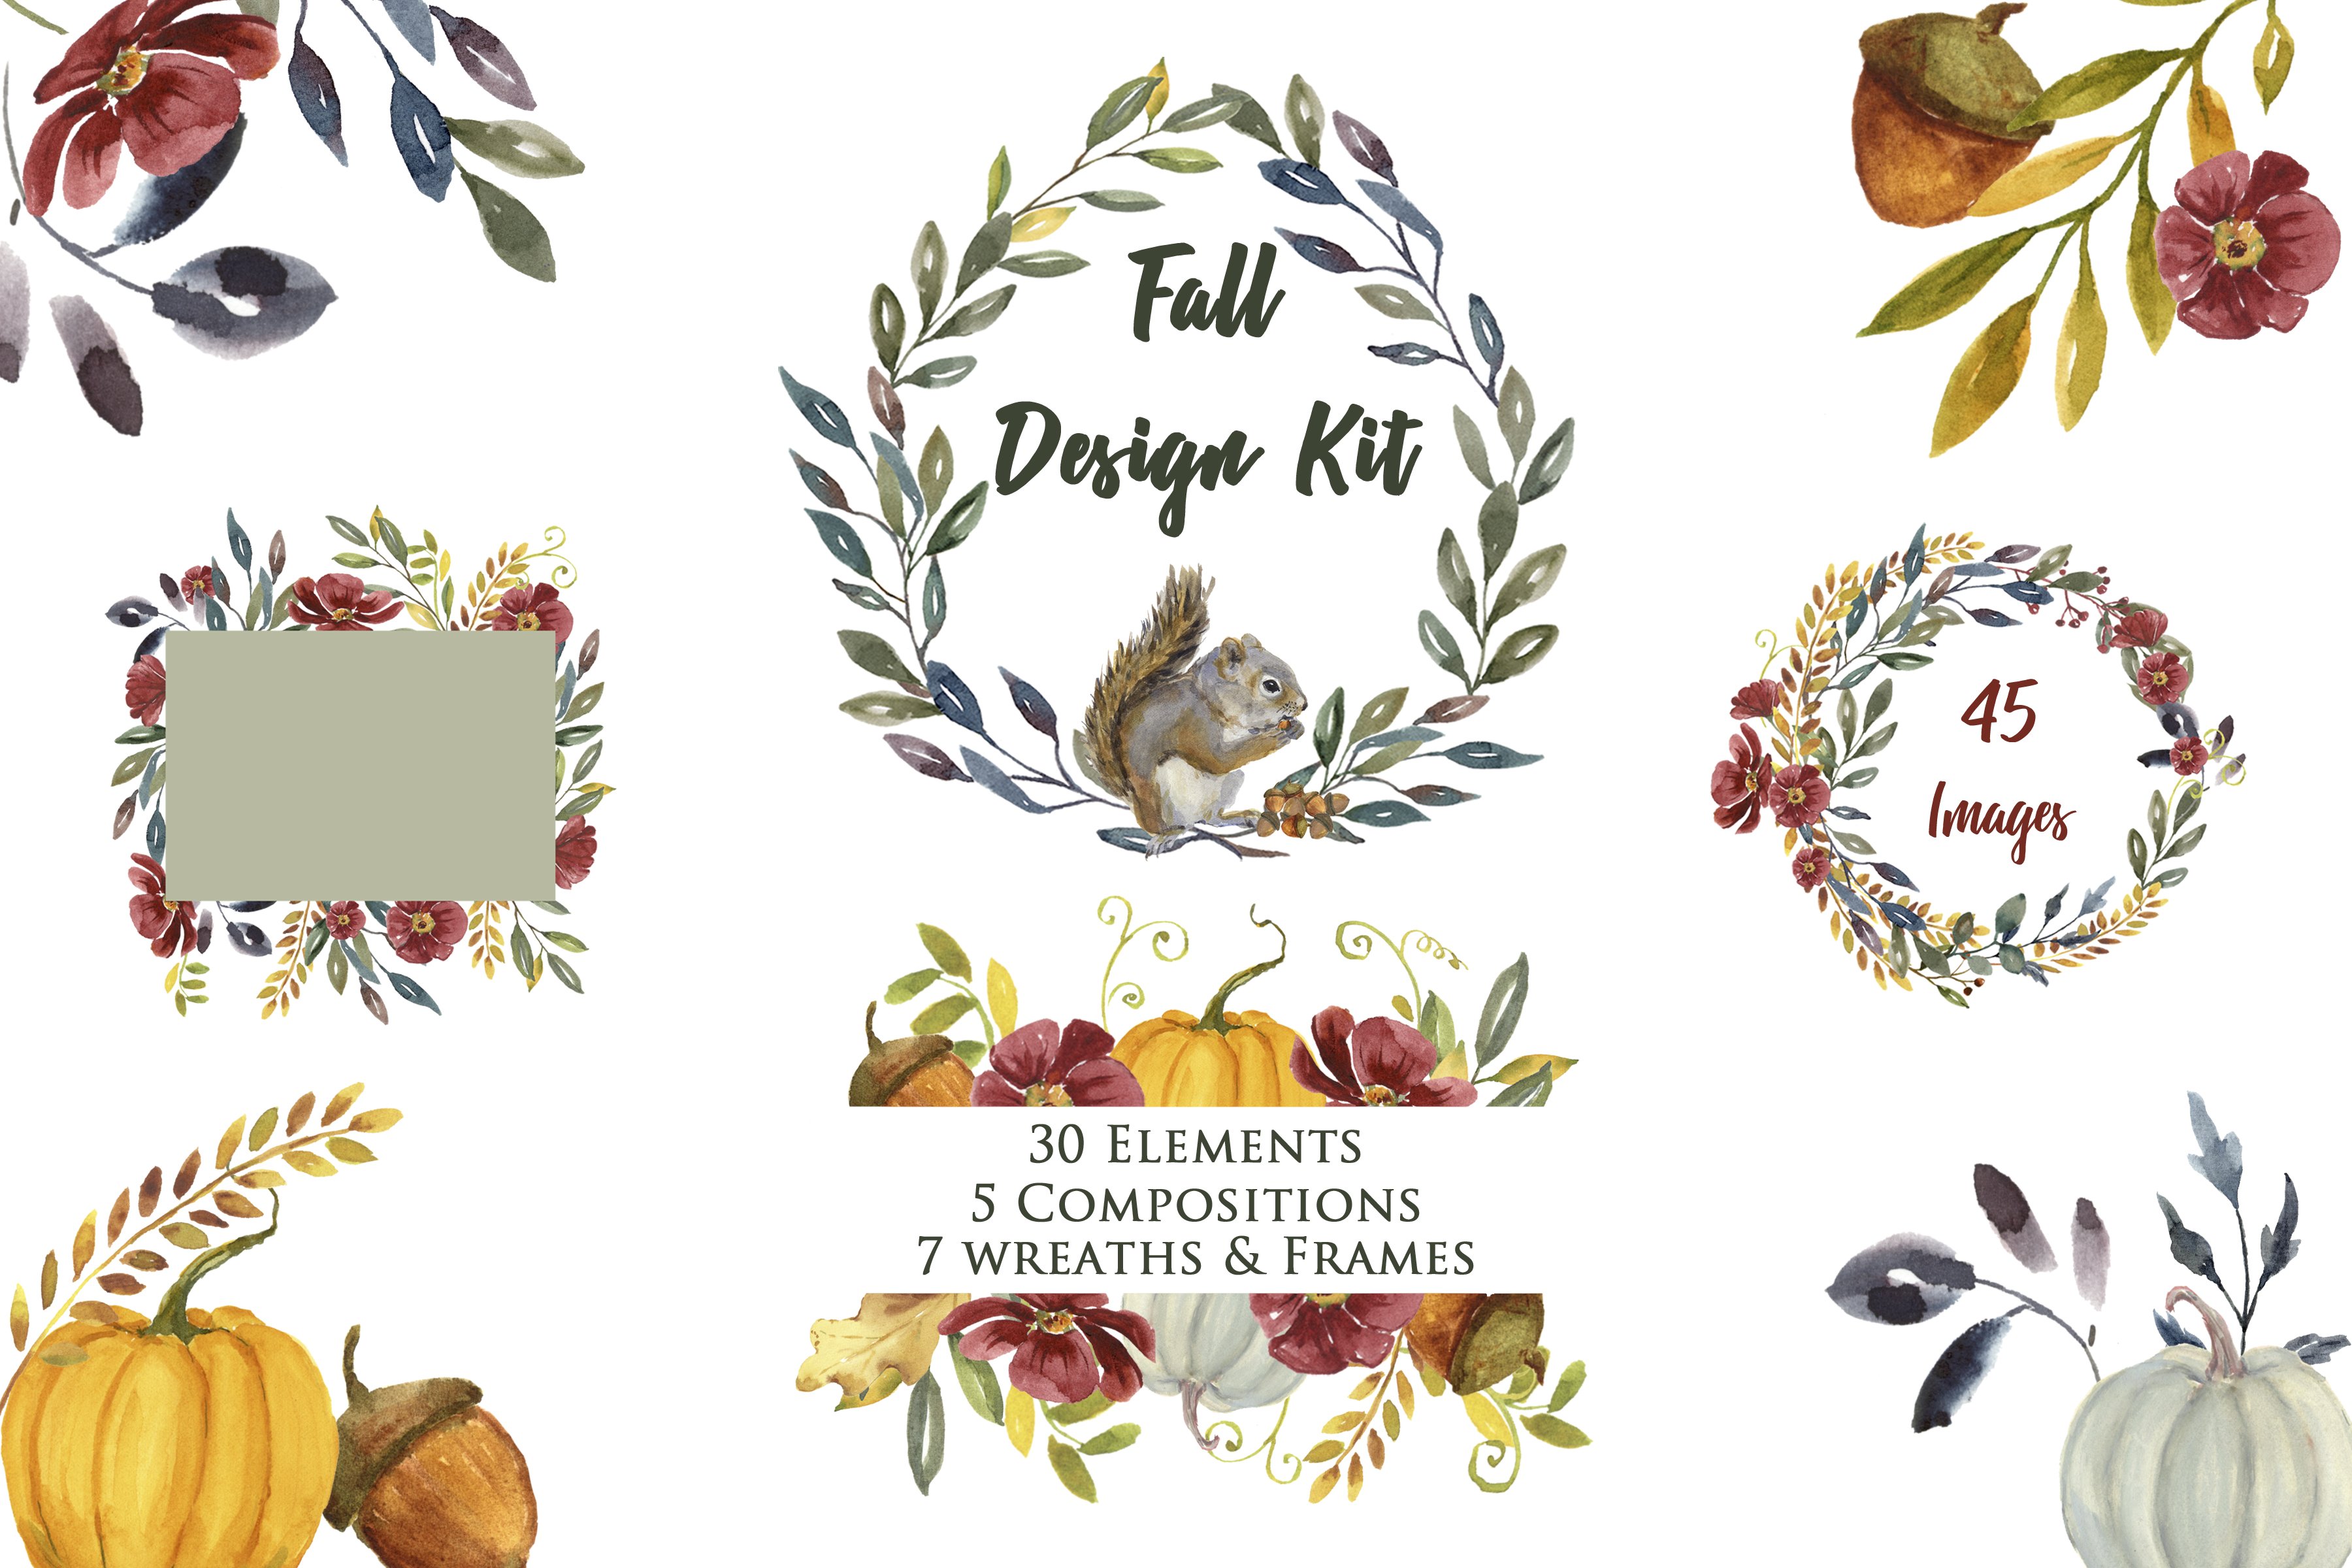 Huge Fall Design Kit Watercolor cover image.